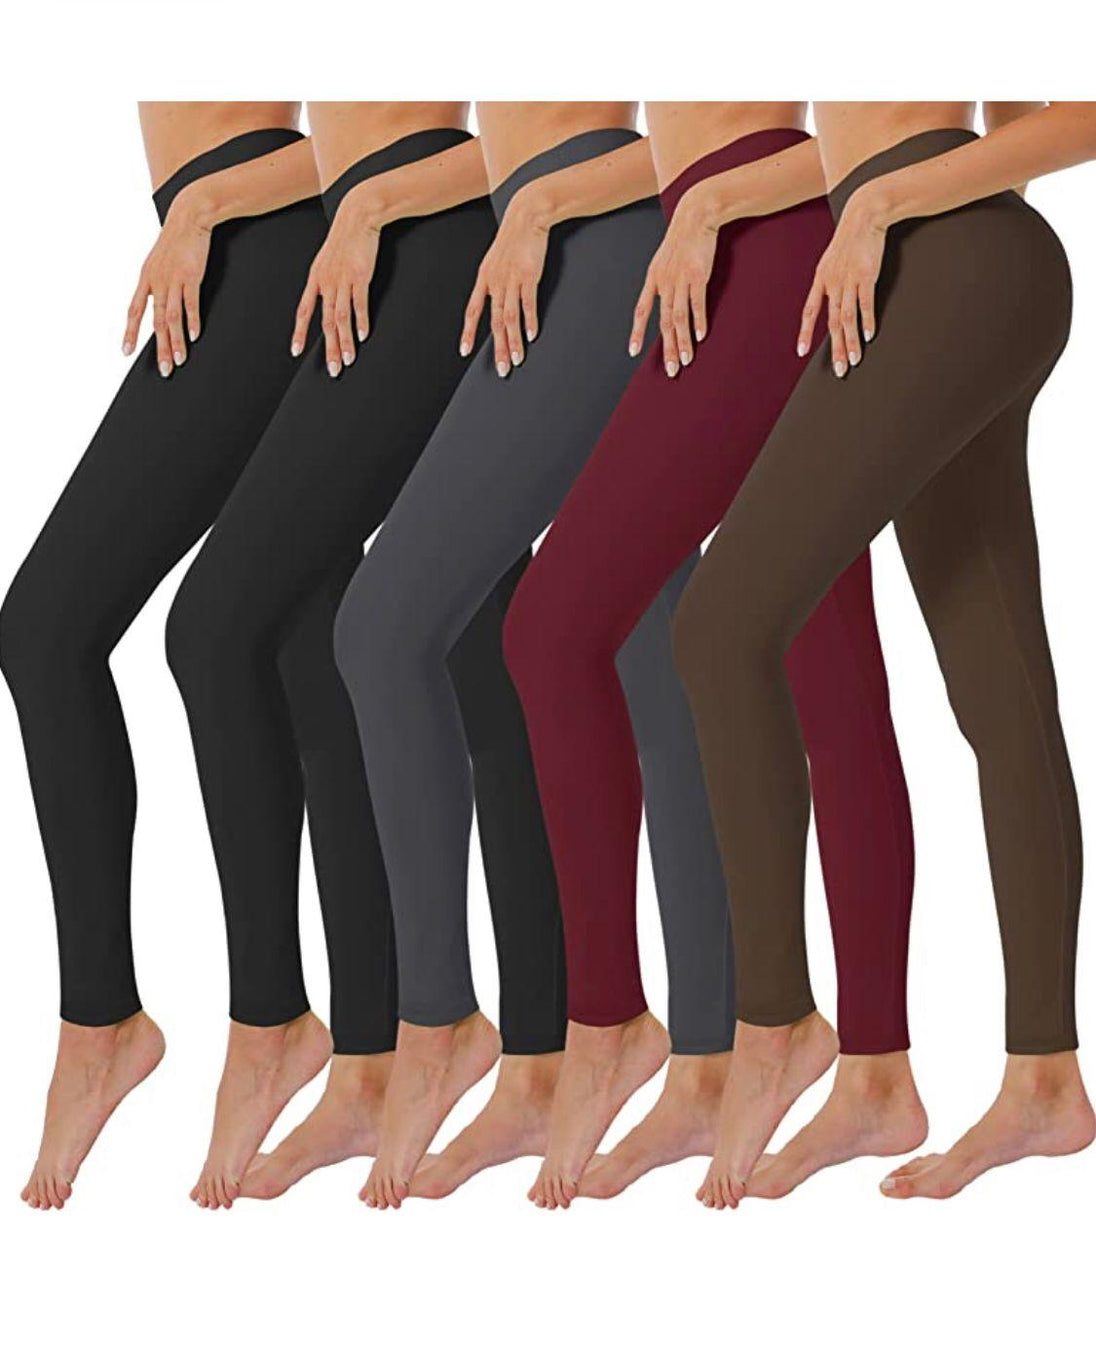 5 Pack Women’s Fleece Lined Leggings High Waist Stretchy warm Leggings one size - PremiumBrandGoods